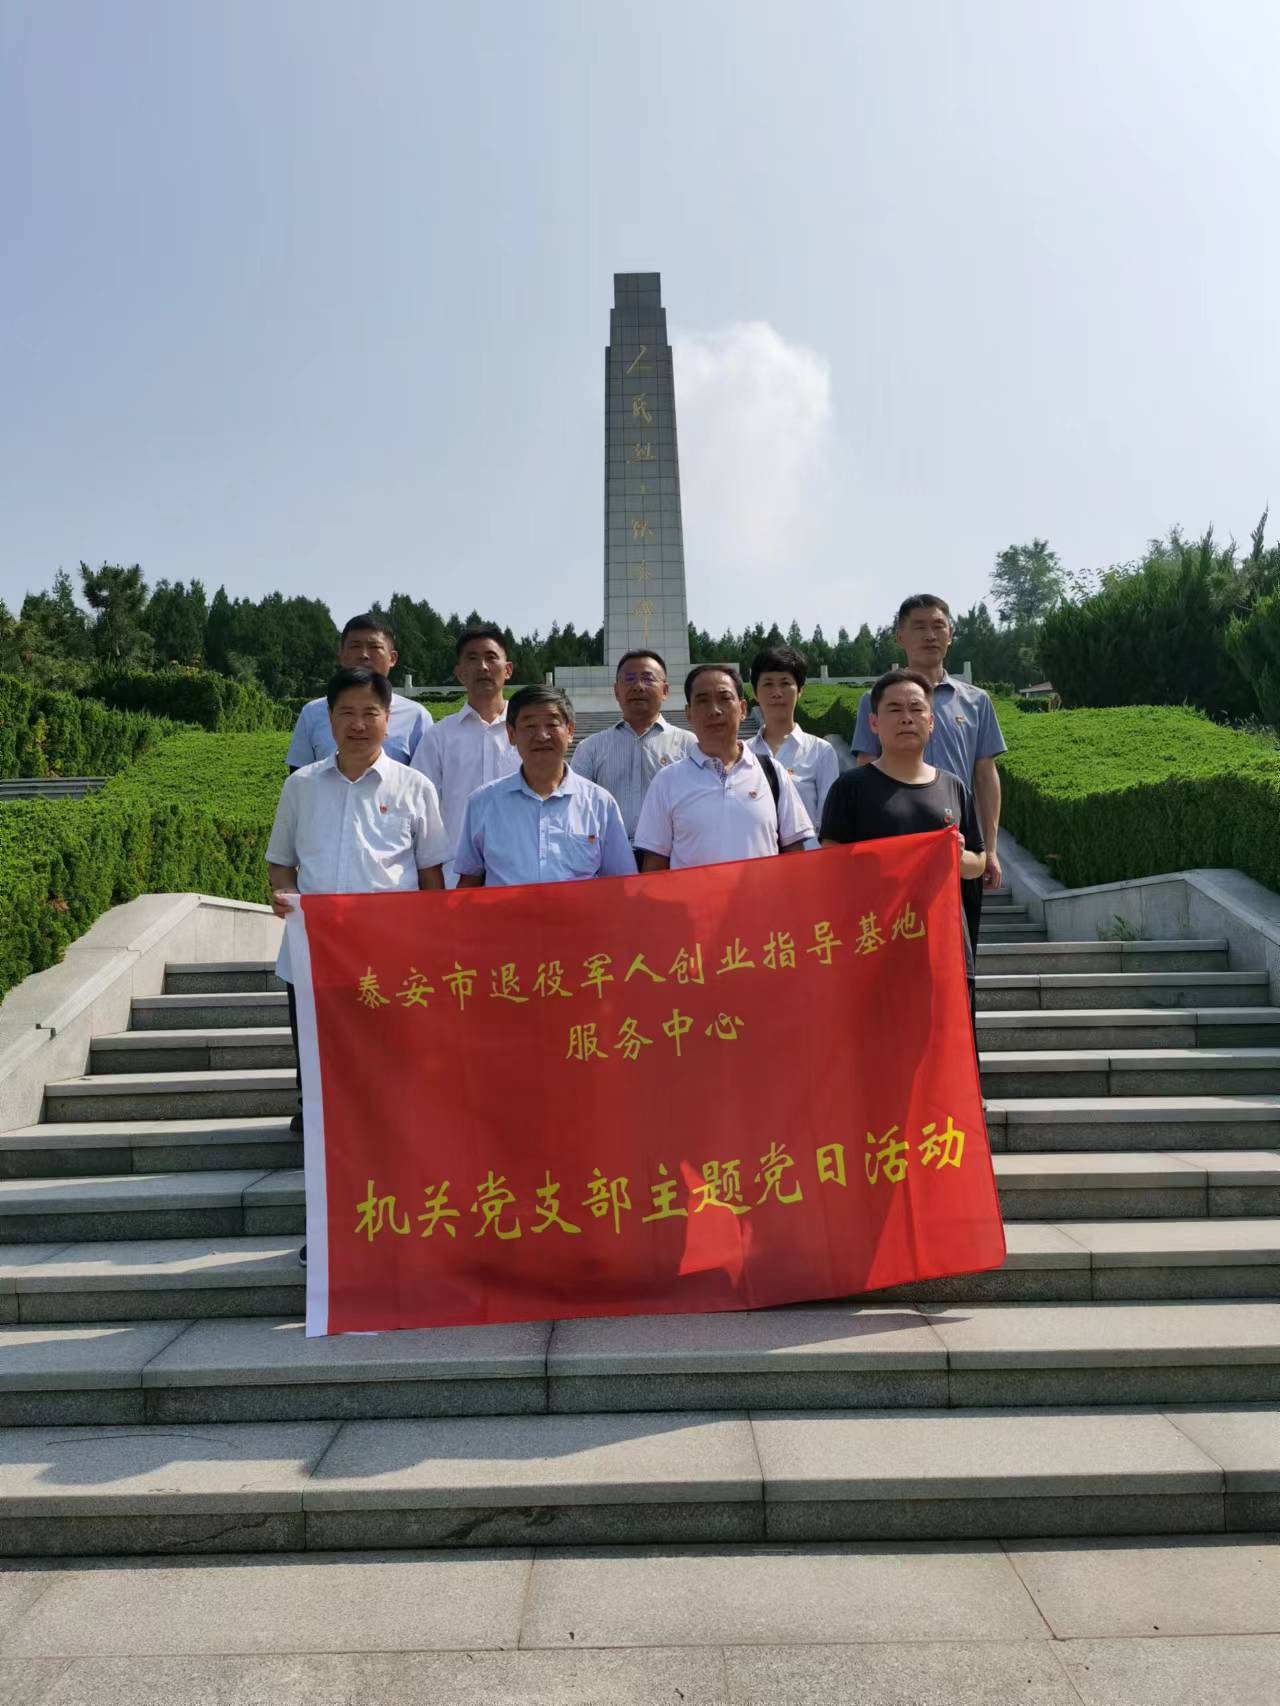 工商管理学院学生党支部组织党员前往泰安革命烈士陵园学习